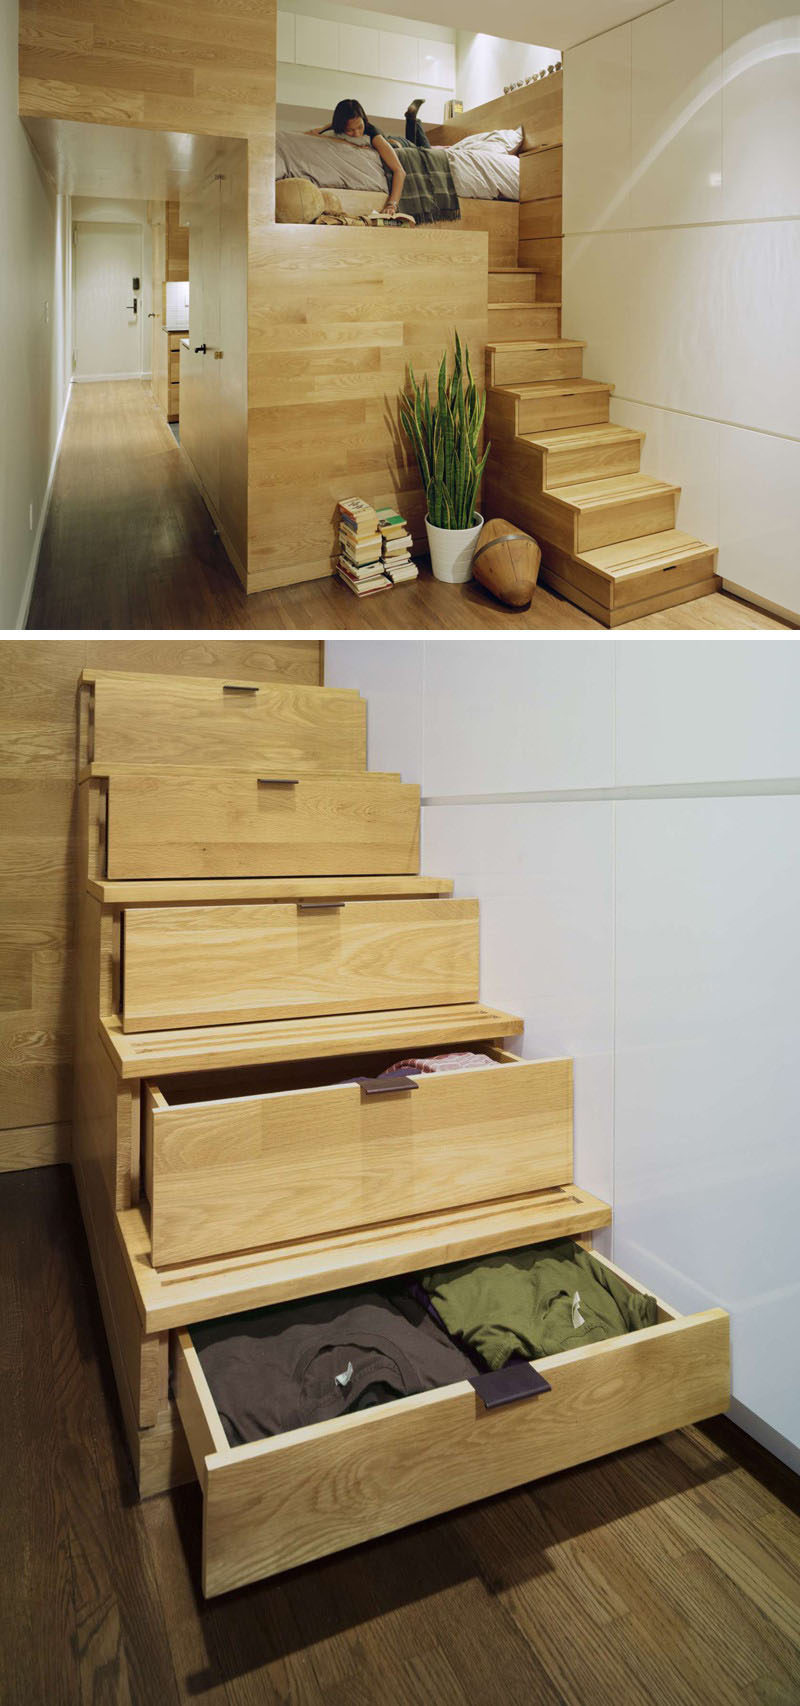 13 идей дизайна лестницы для небольших помещений // Лестница, ведущая к кровати-чердаку в этой квартире, также служит местом для хранения одежды, решая две проблемы с одной лестницей.